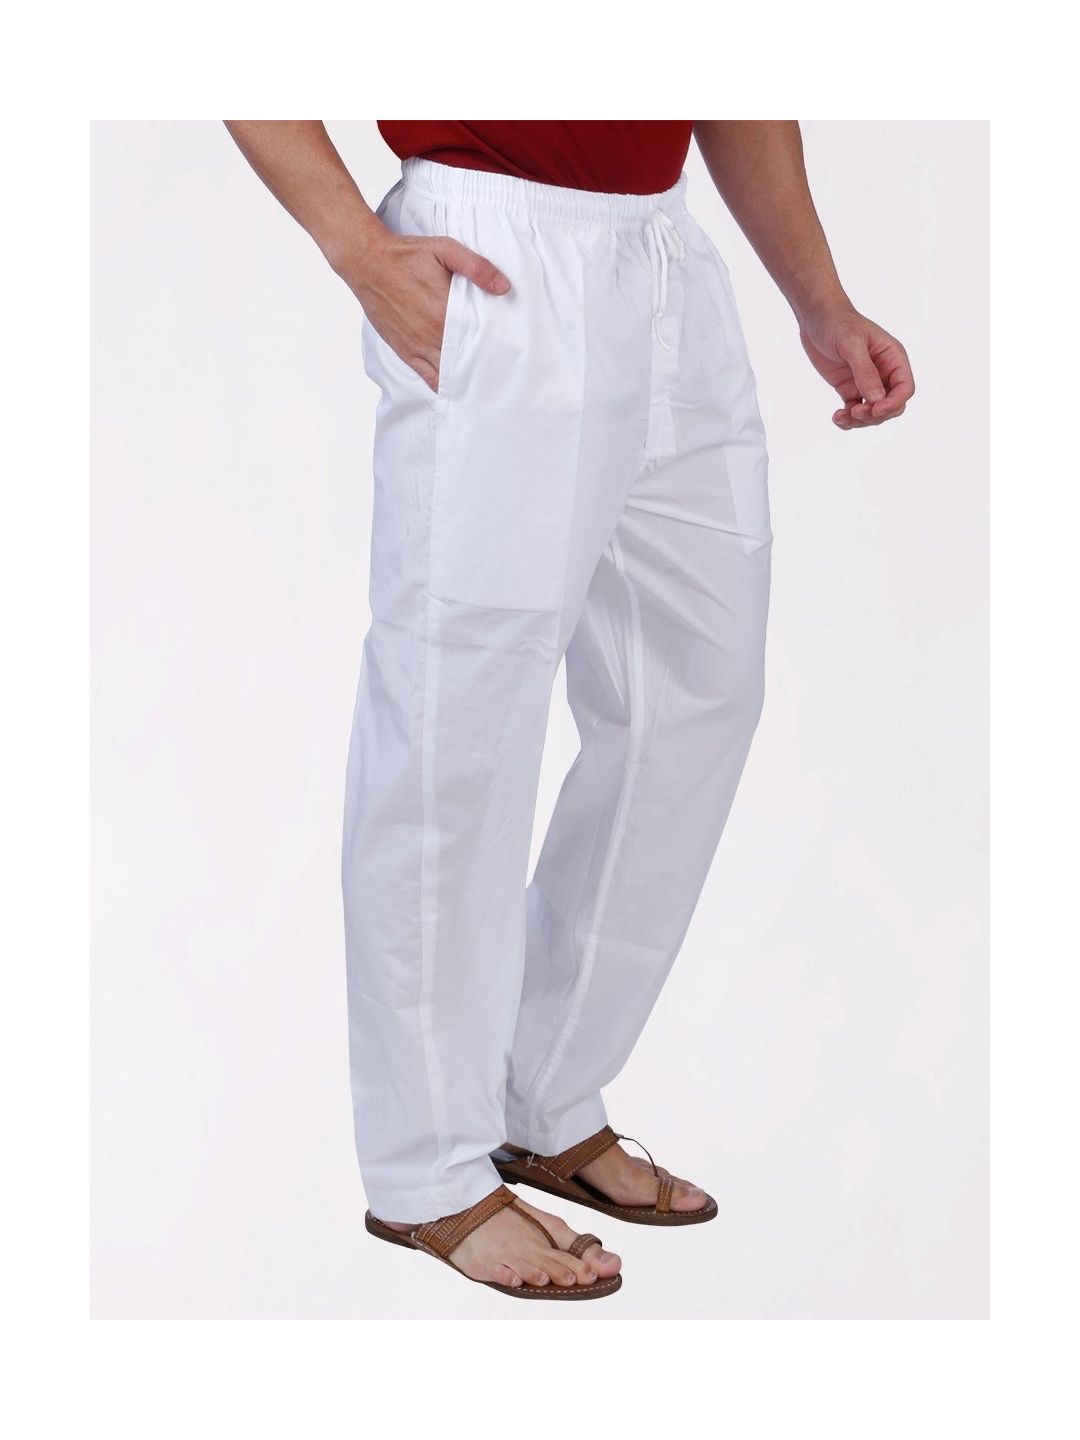 Buy Mens Cotton Pajamas & Pyjamas For Men - Apella